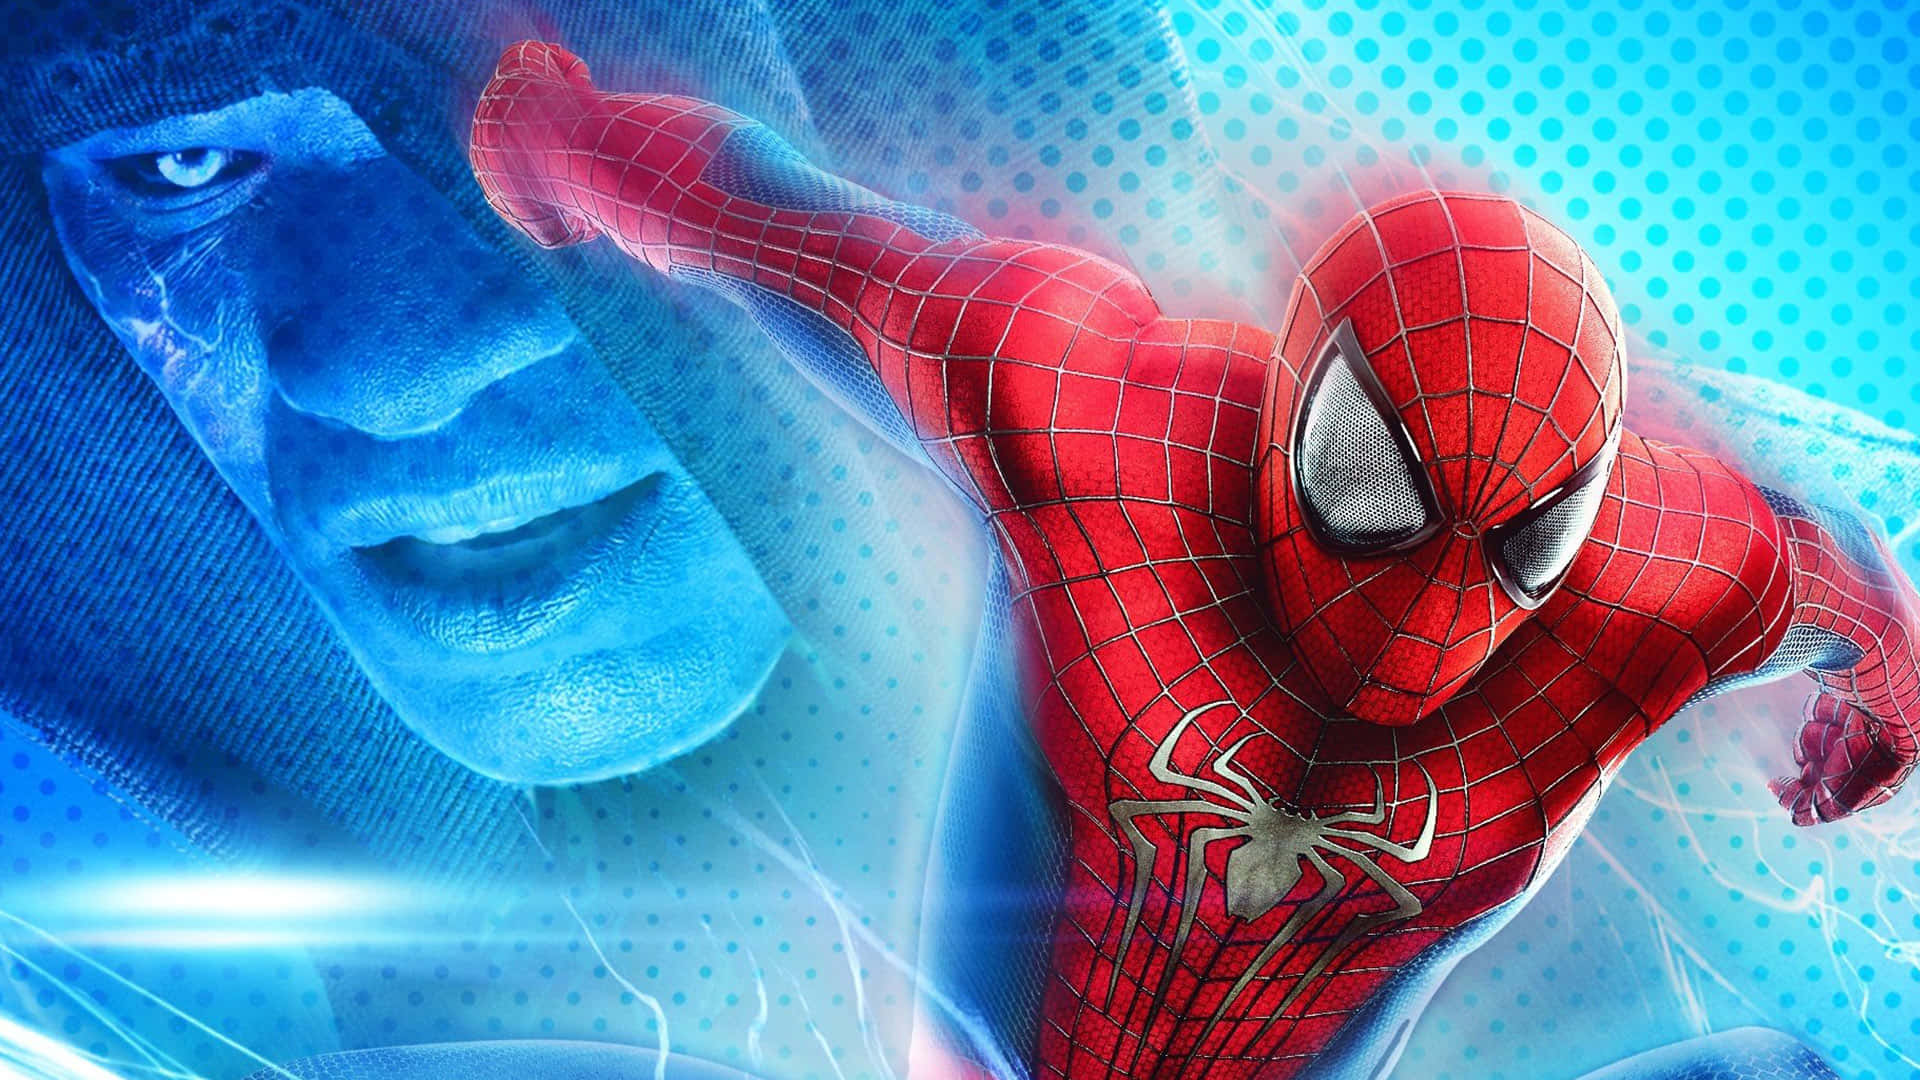 Новый паук с гарфилдом. The amazing Spider-man 2 (новый человек — паук 2). Эндрю Гарфилд человек паук. Человек-паук с Эндрю Гарфилдом 2. Эндрю Гарфилд человек паук 2.